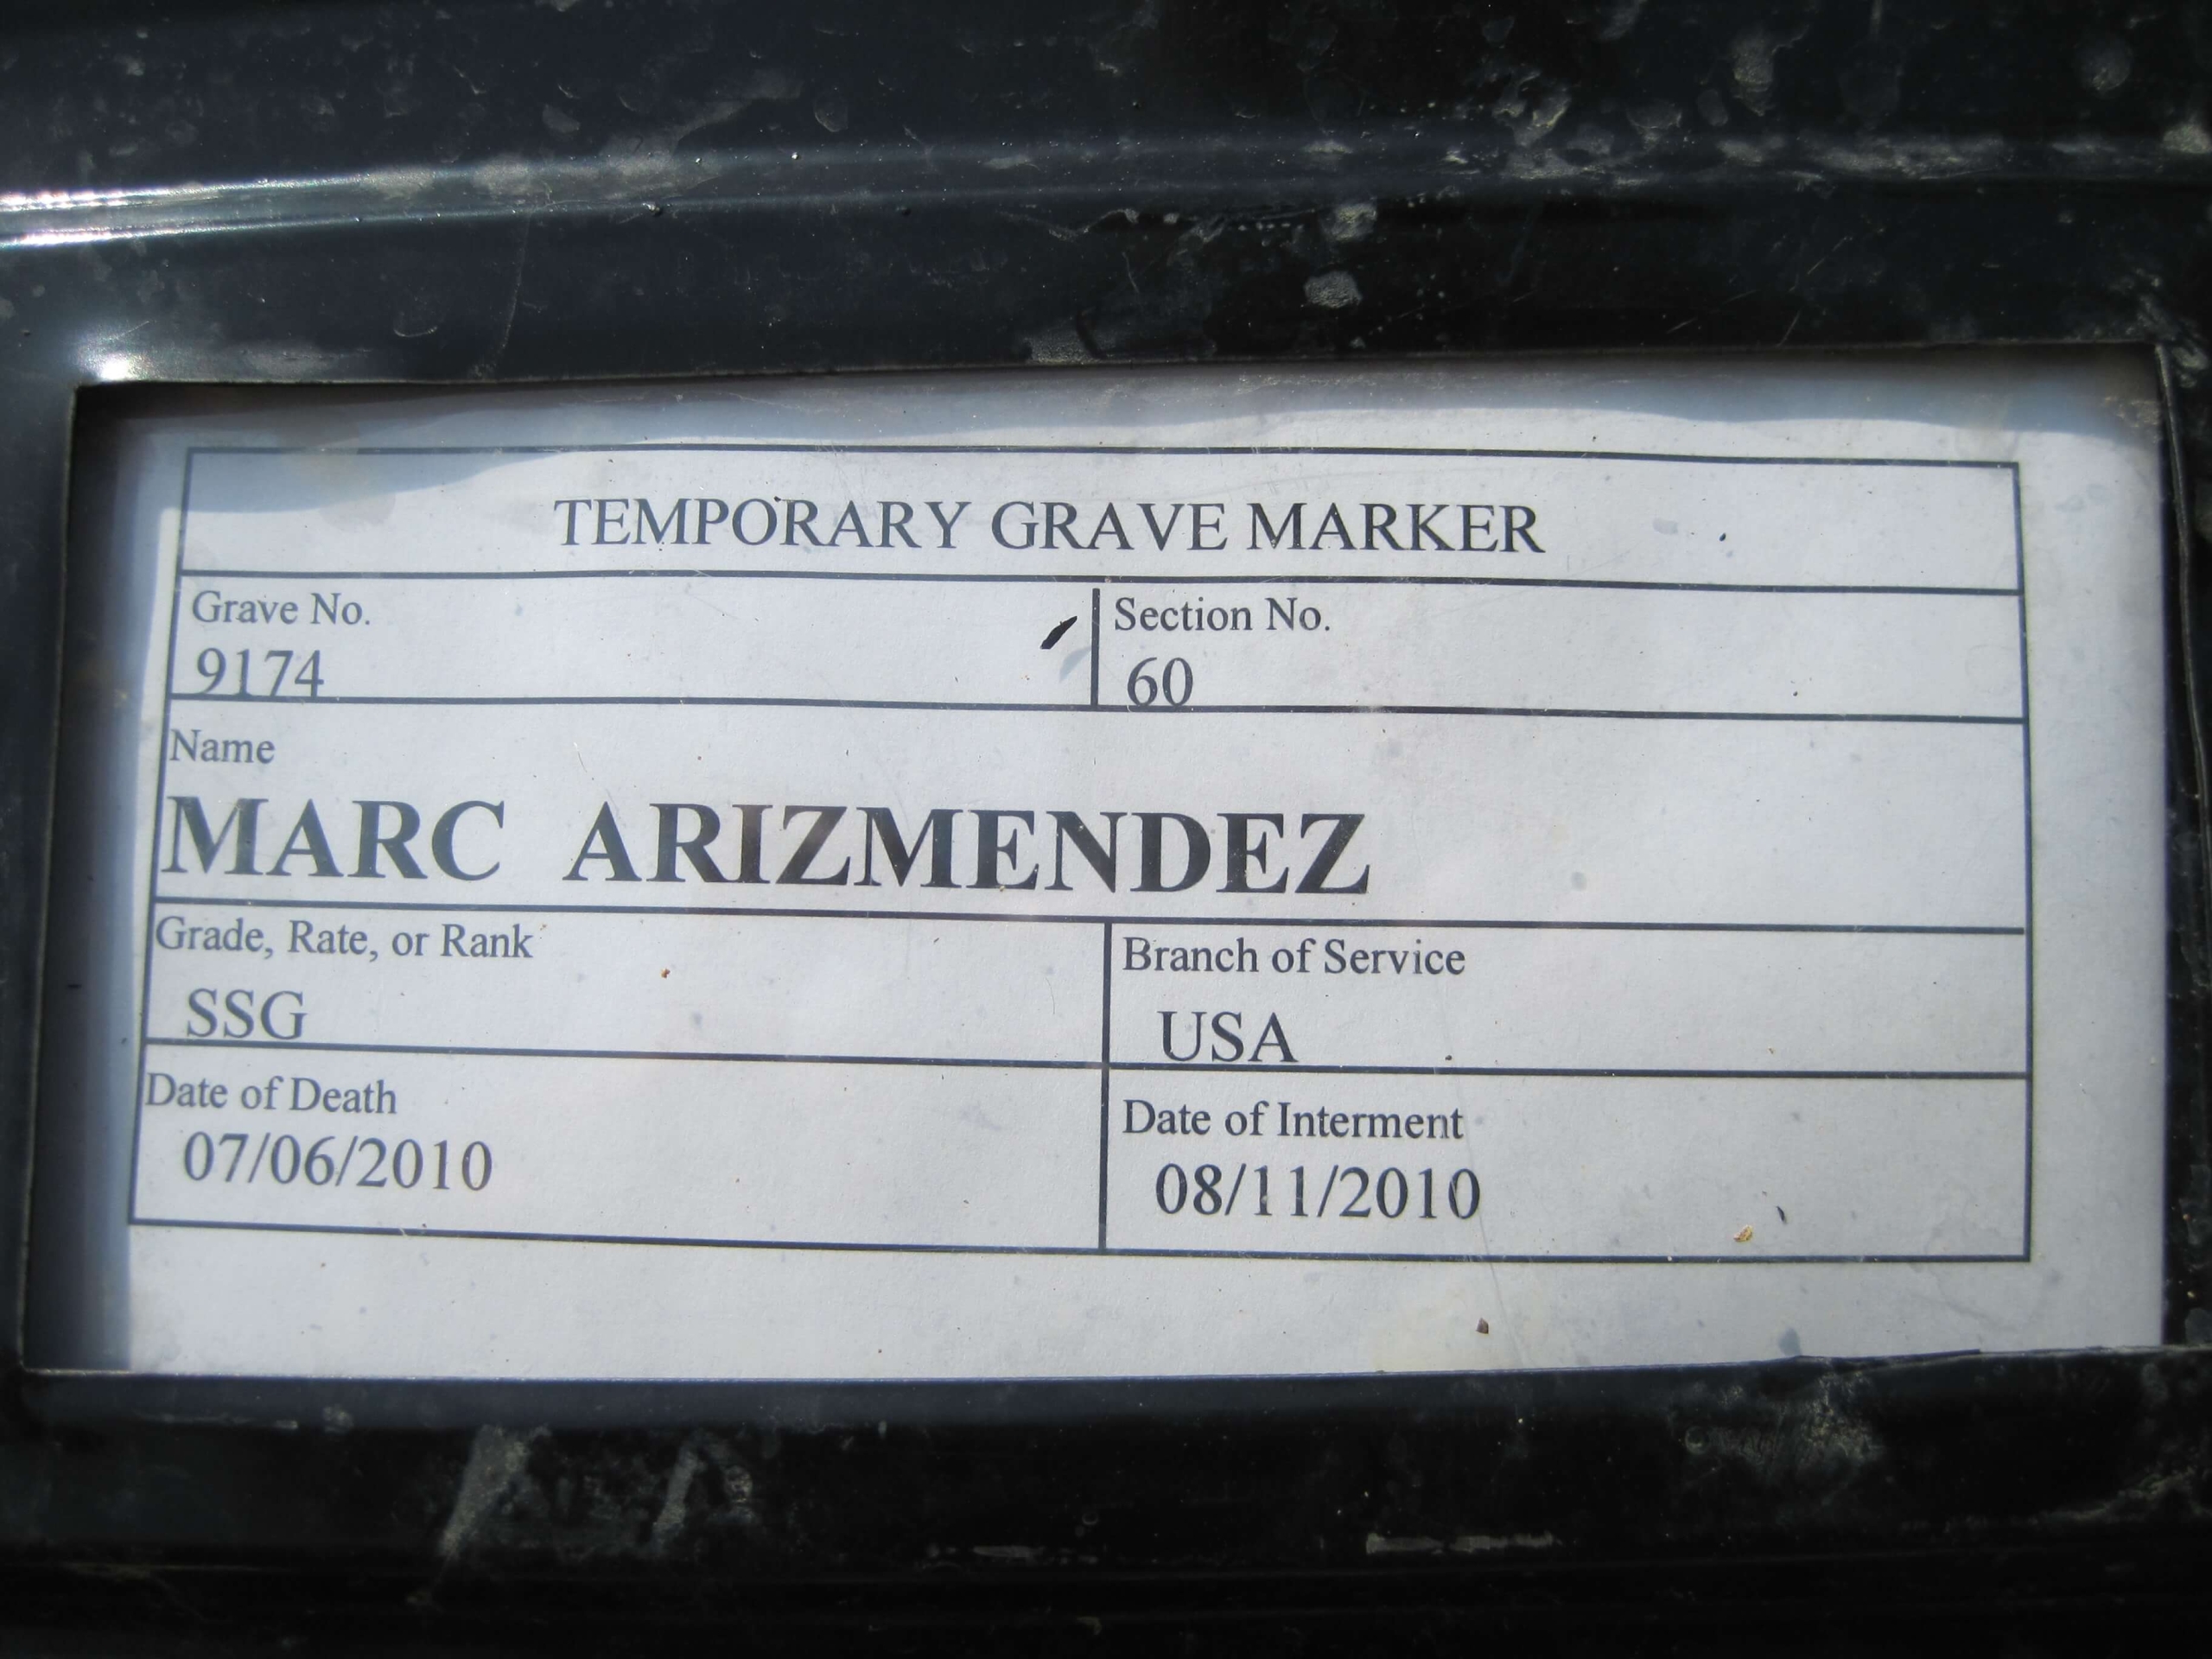 marc-arizmendez-gravesite-photo-by-eileen-horan-august-2010-001